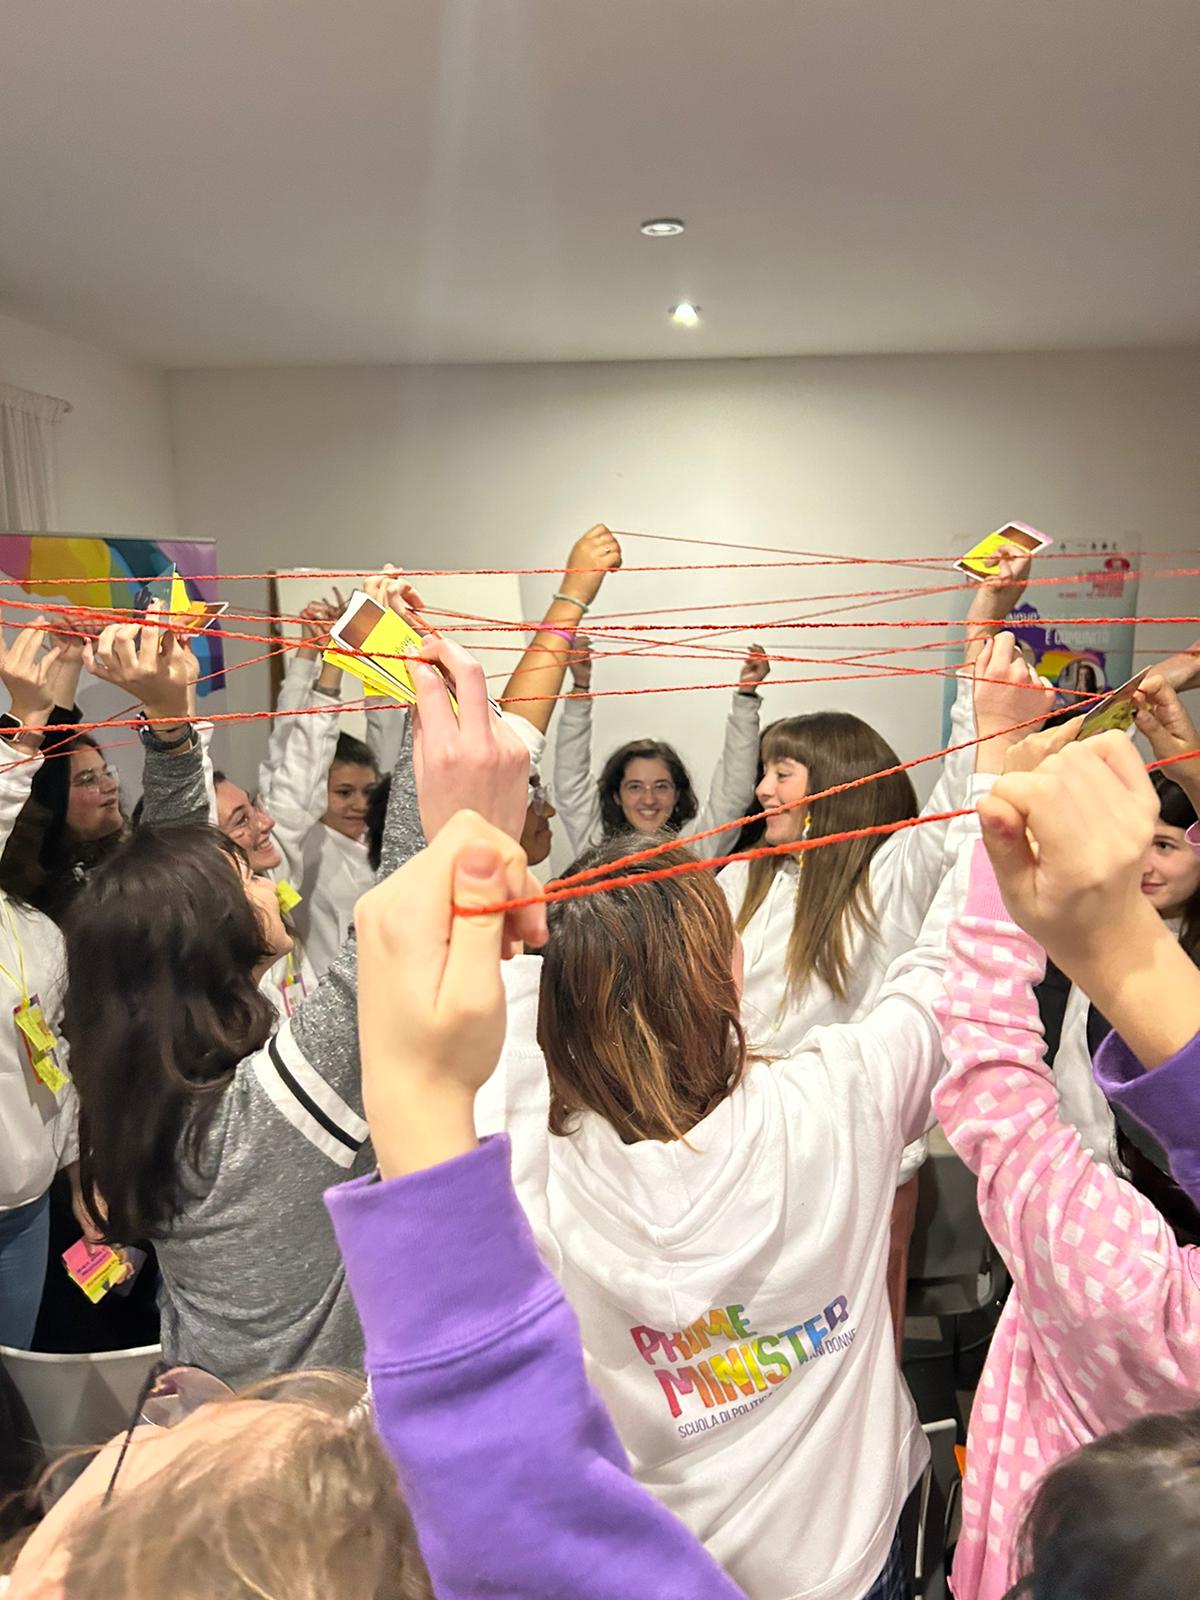 Le ragazze di Prime Minister impegnate in una attività di team building durante una delle lezioni